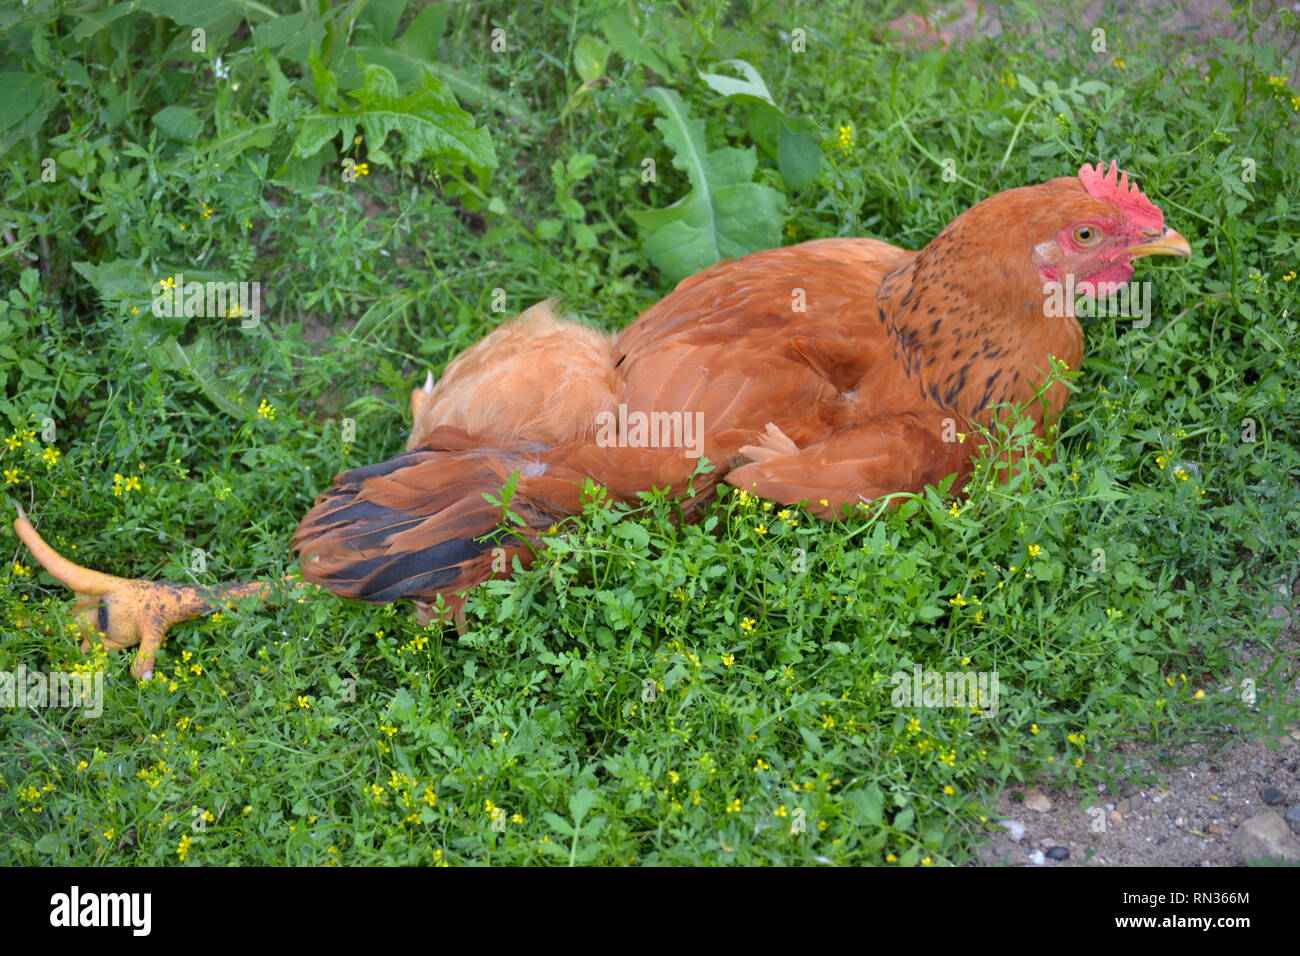 Poulet brun allongé sur l'herbe le jour chaud de l'été, volaille domestique, Gall gallus domesticus Banque D'Images